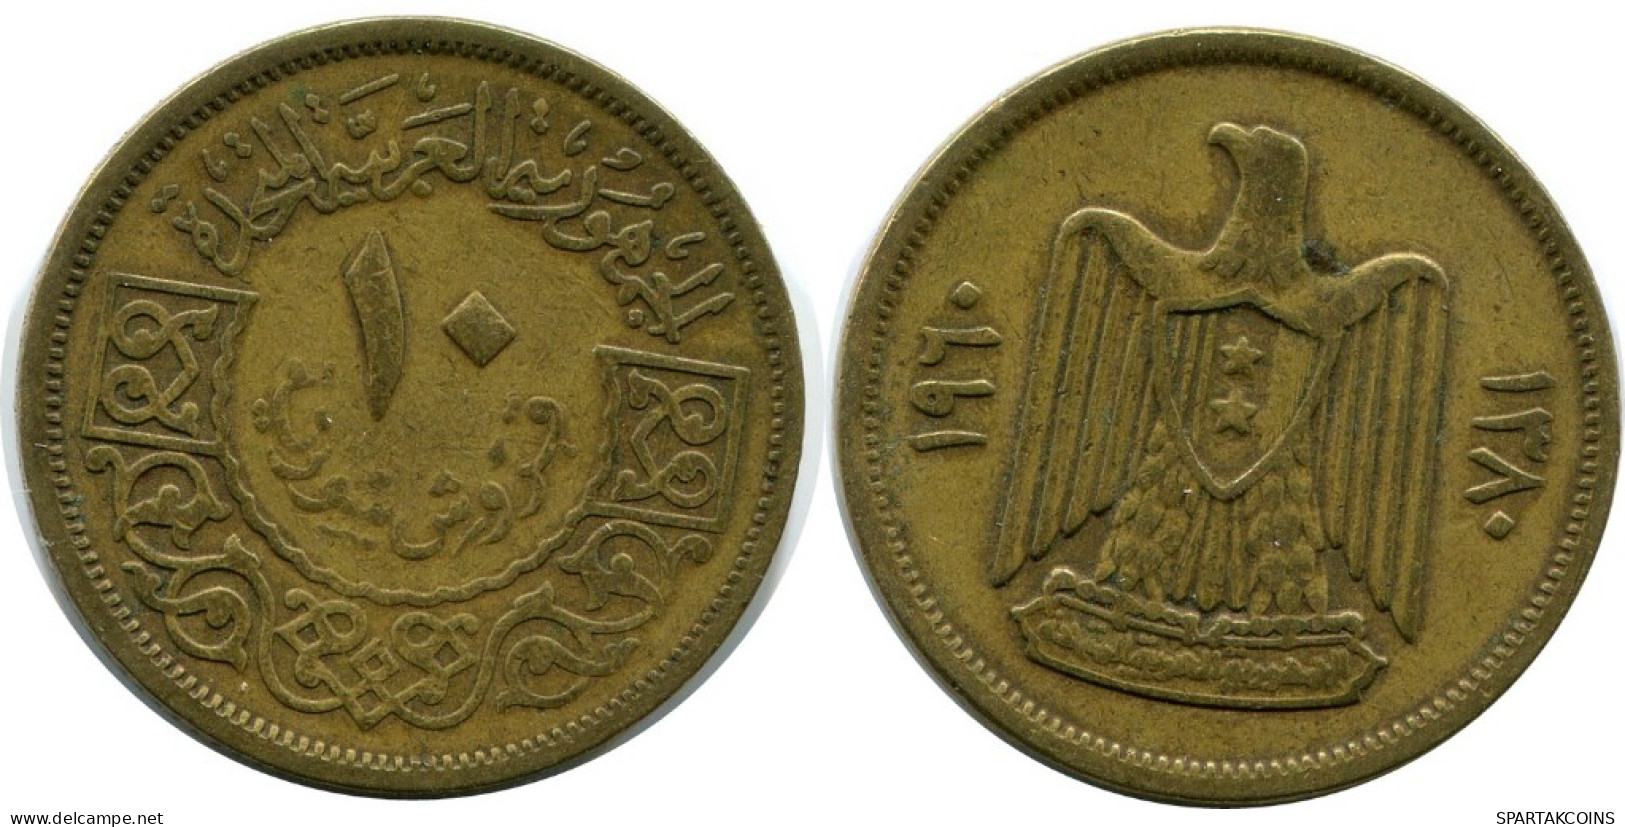 10 QIRSH 1960 SYRIA Islamic Coin #AH959.U.A - Siria